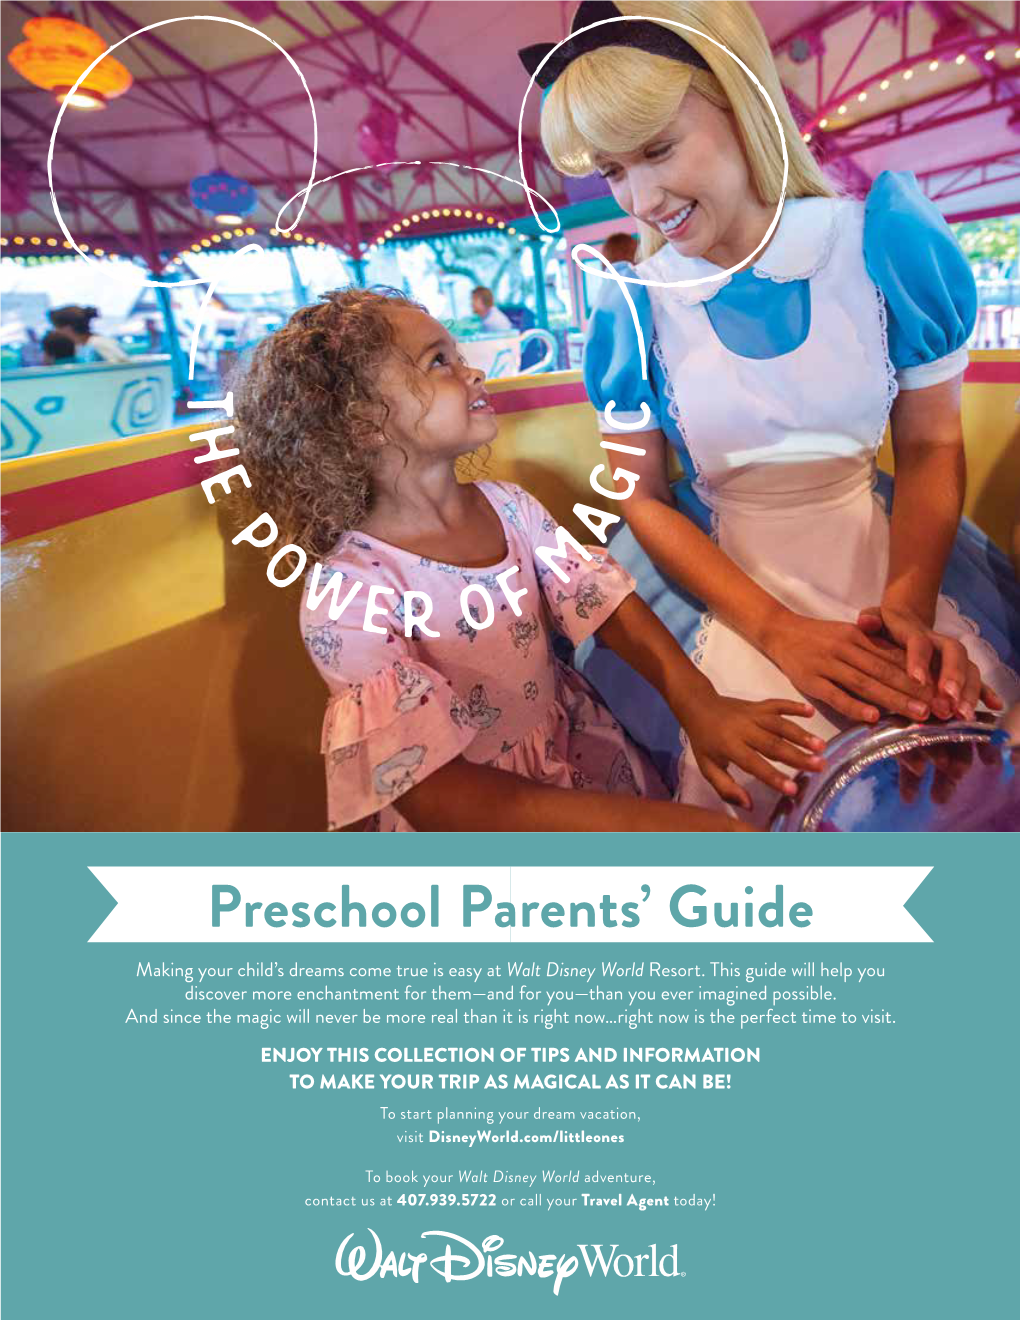 Preschool Parents' Guide